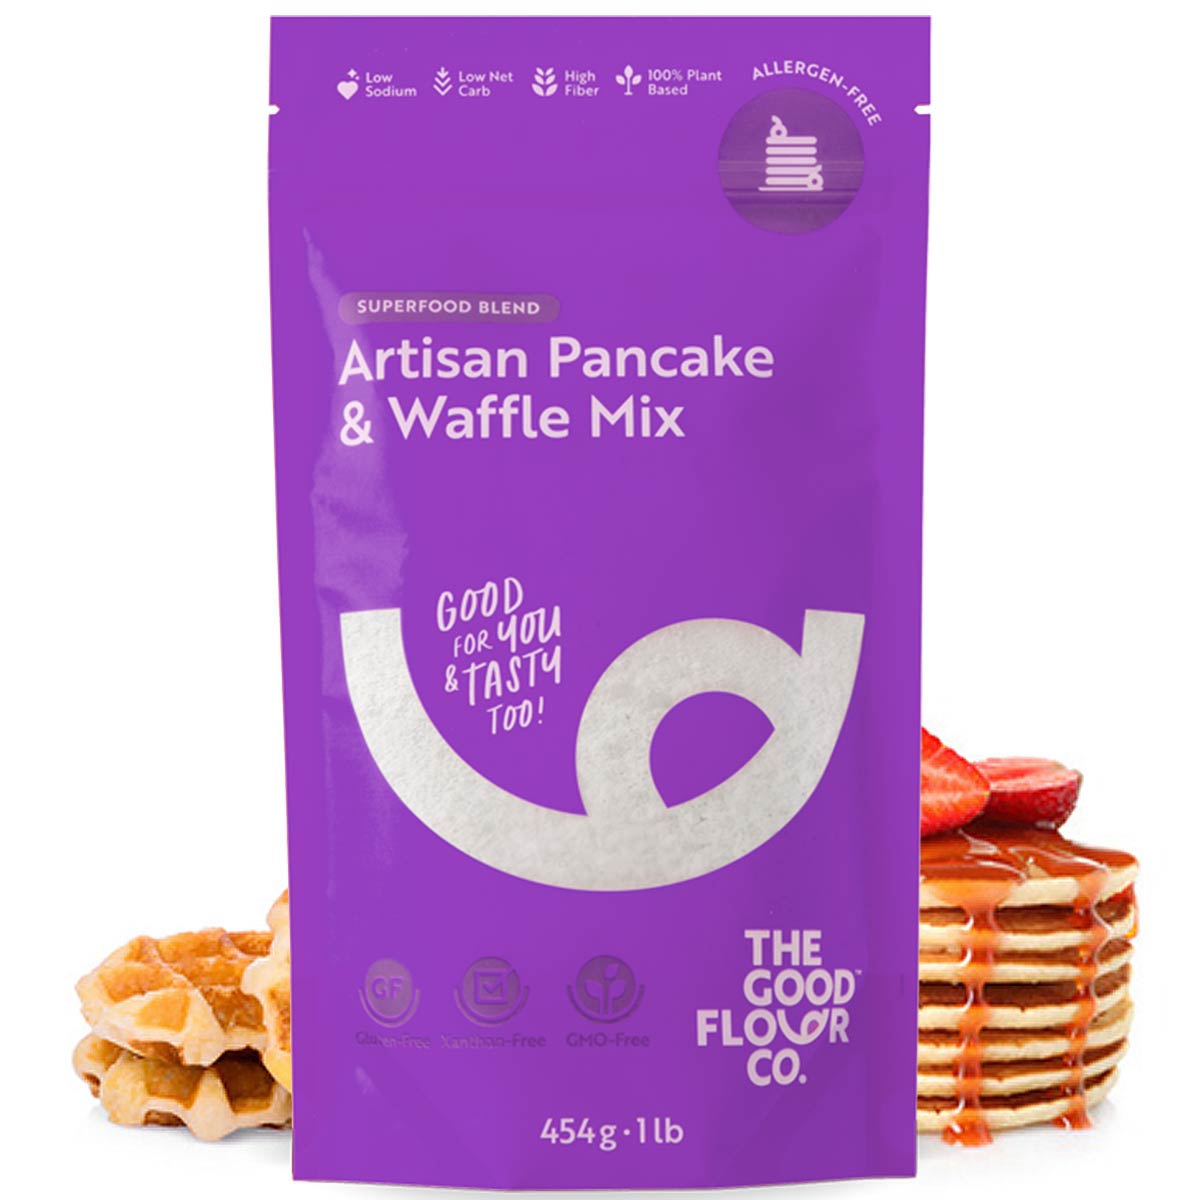 Artisan Pancake & Waffle Mix